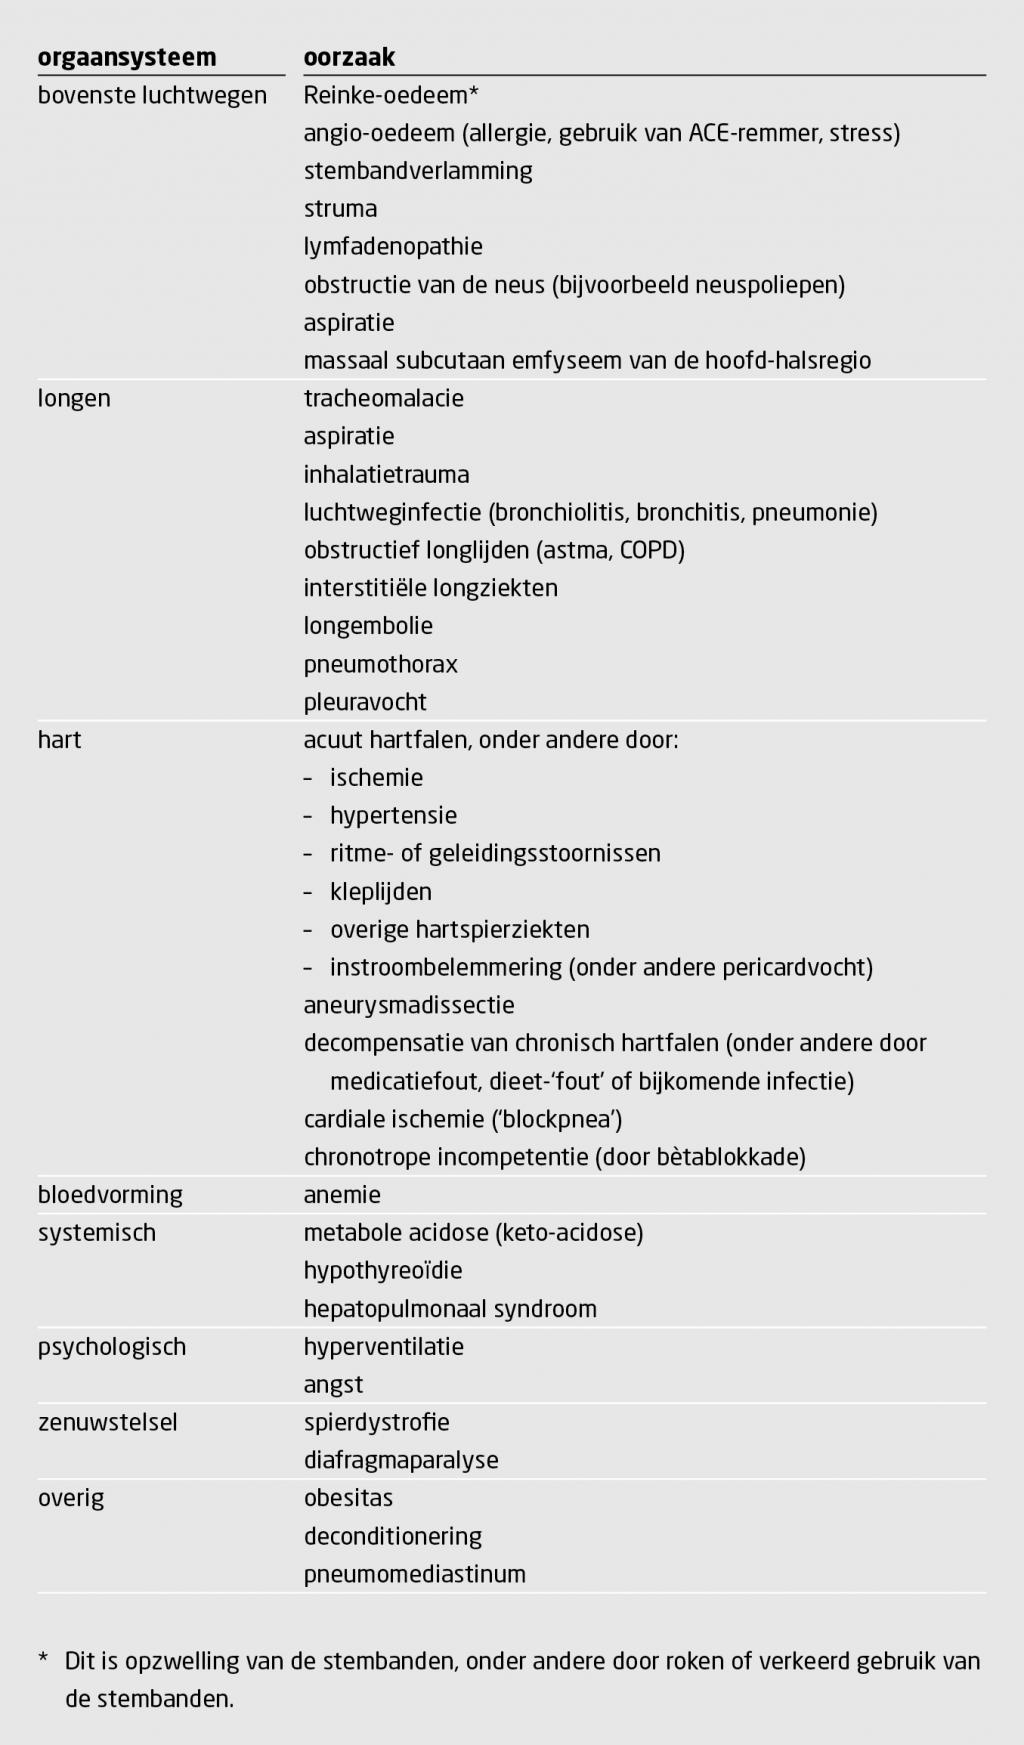 Tabel 4 | Oorzaken van dyspneu, ingedeeld naar orgaansysteem